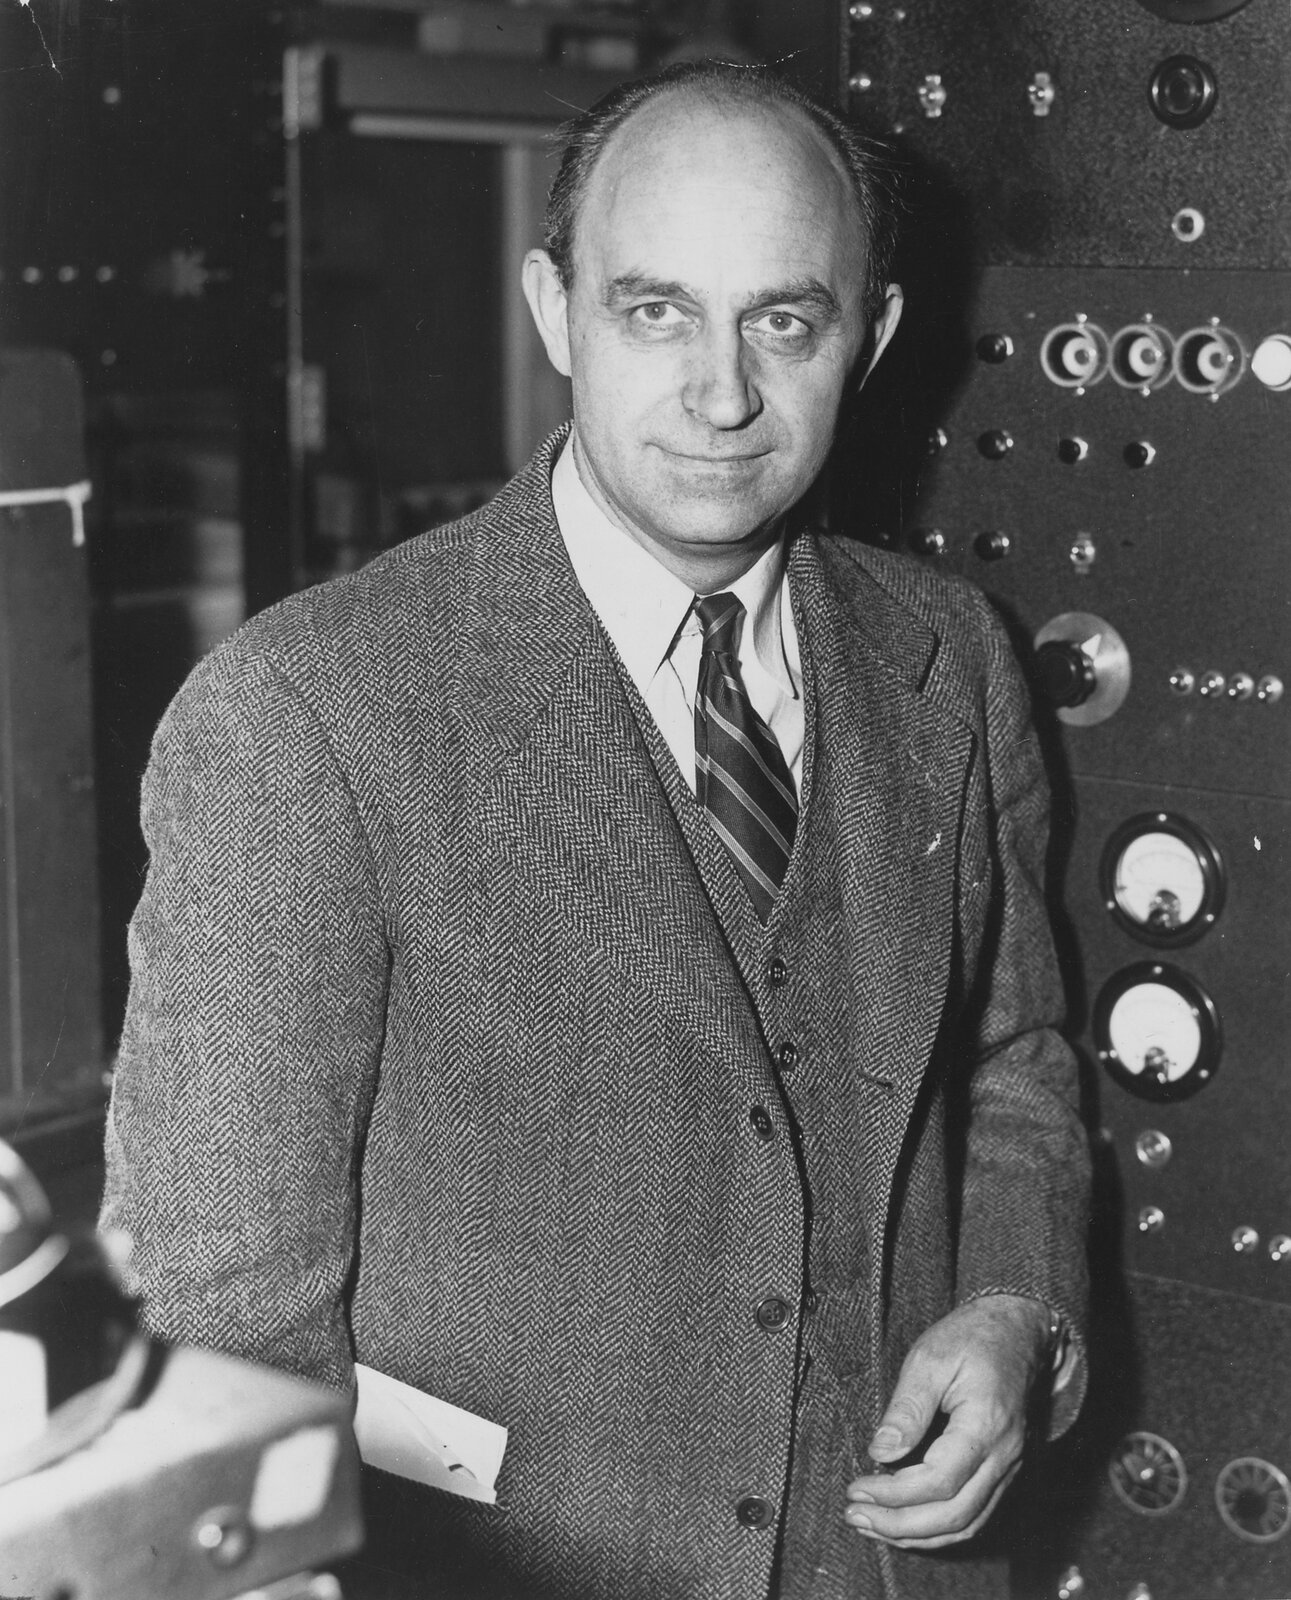 Zdjęcie przedstawia Enrico Fermi. Fotografia czarno-biała. Na zdjęciu mężczyzna w wieku ok. 45 lat, szczupły, łysiejący. Czoło wysokie, linia włosów cofnięta, włosy ciemne. Brwi gęste. Oczy duże. Nos długi. Usta wąskie. Mężczyzna się uśmiecha. Widoczne cienie pod oczami. Uszy duże, delikatnie odstające. Mężczyzna jest ubrany w trzyczęściowy garnitur w prążki, białą koszulę oraz krawat w paski.